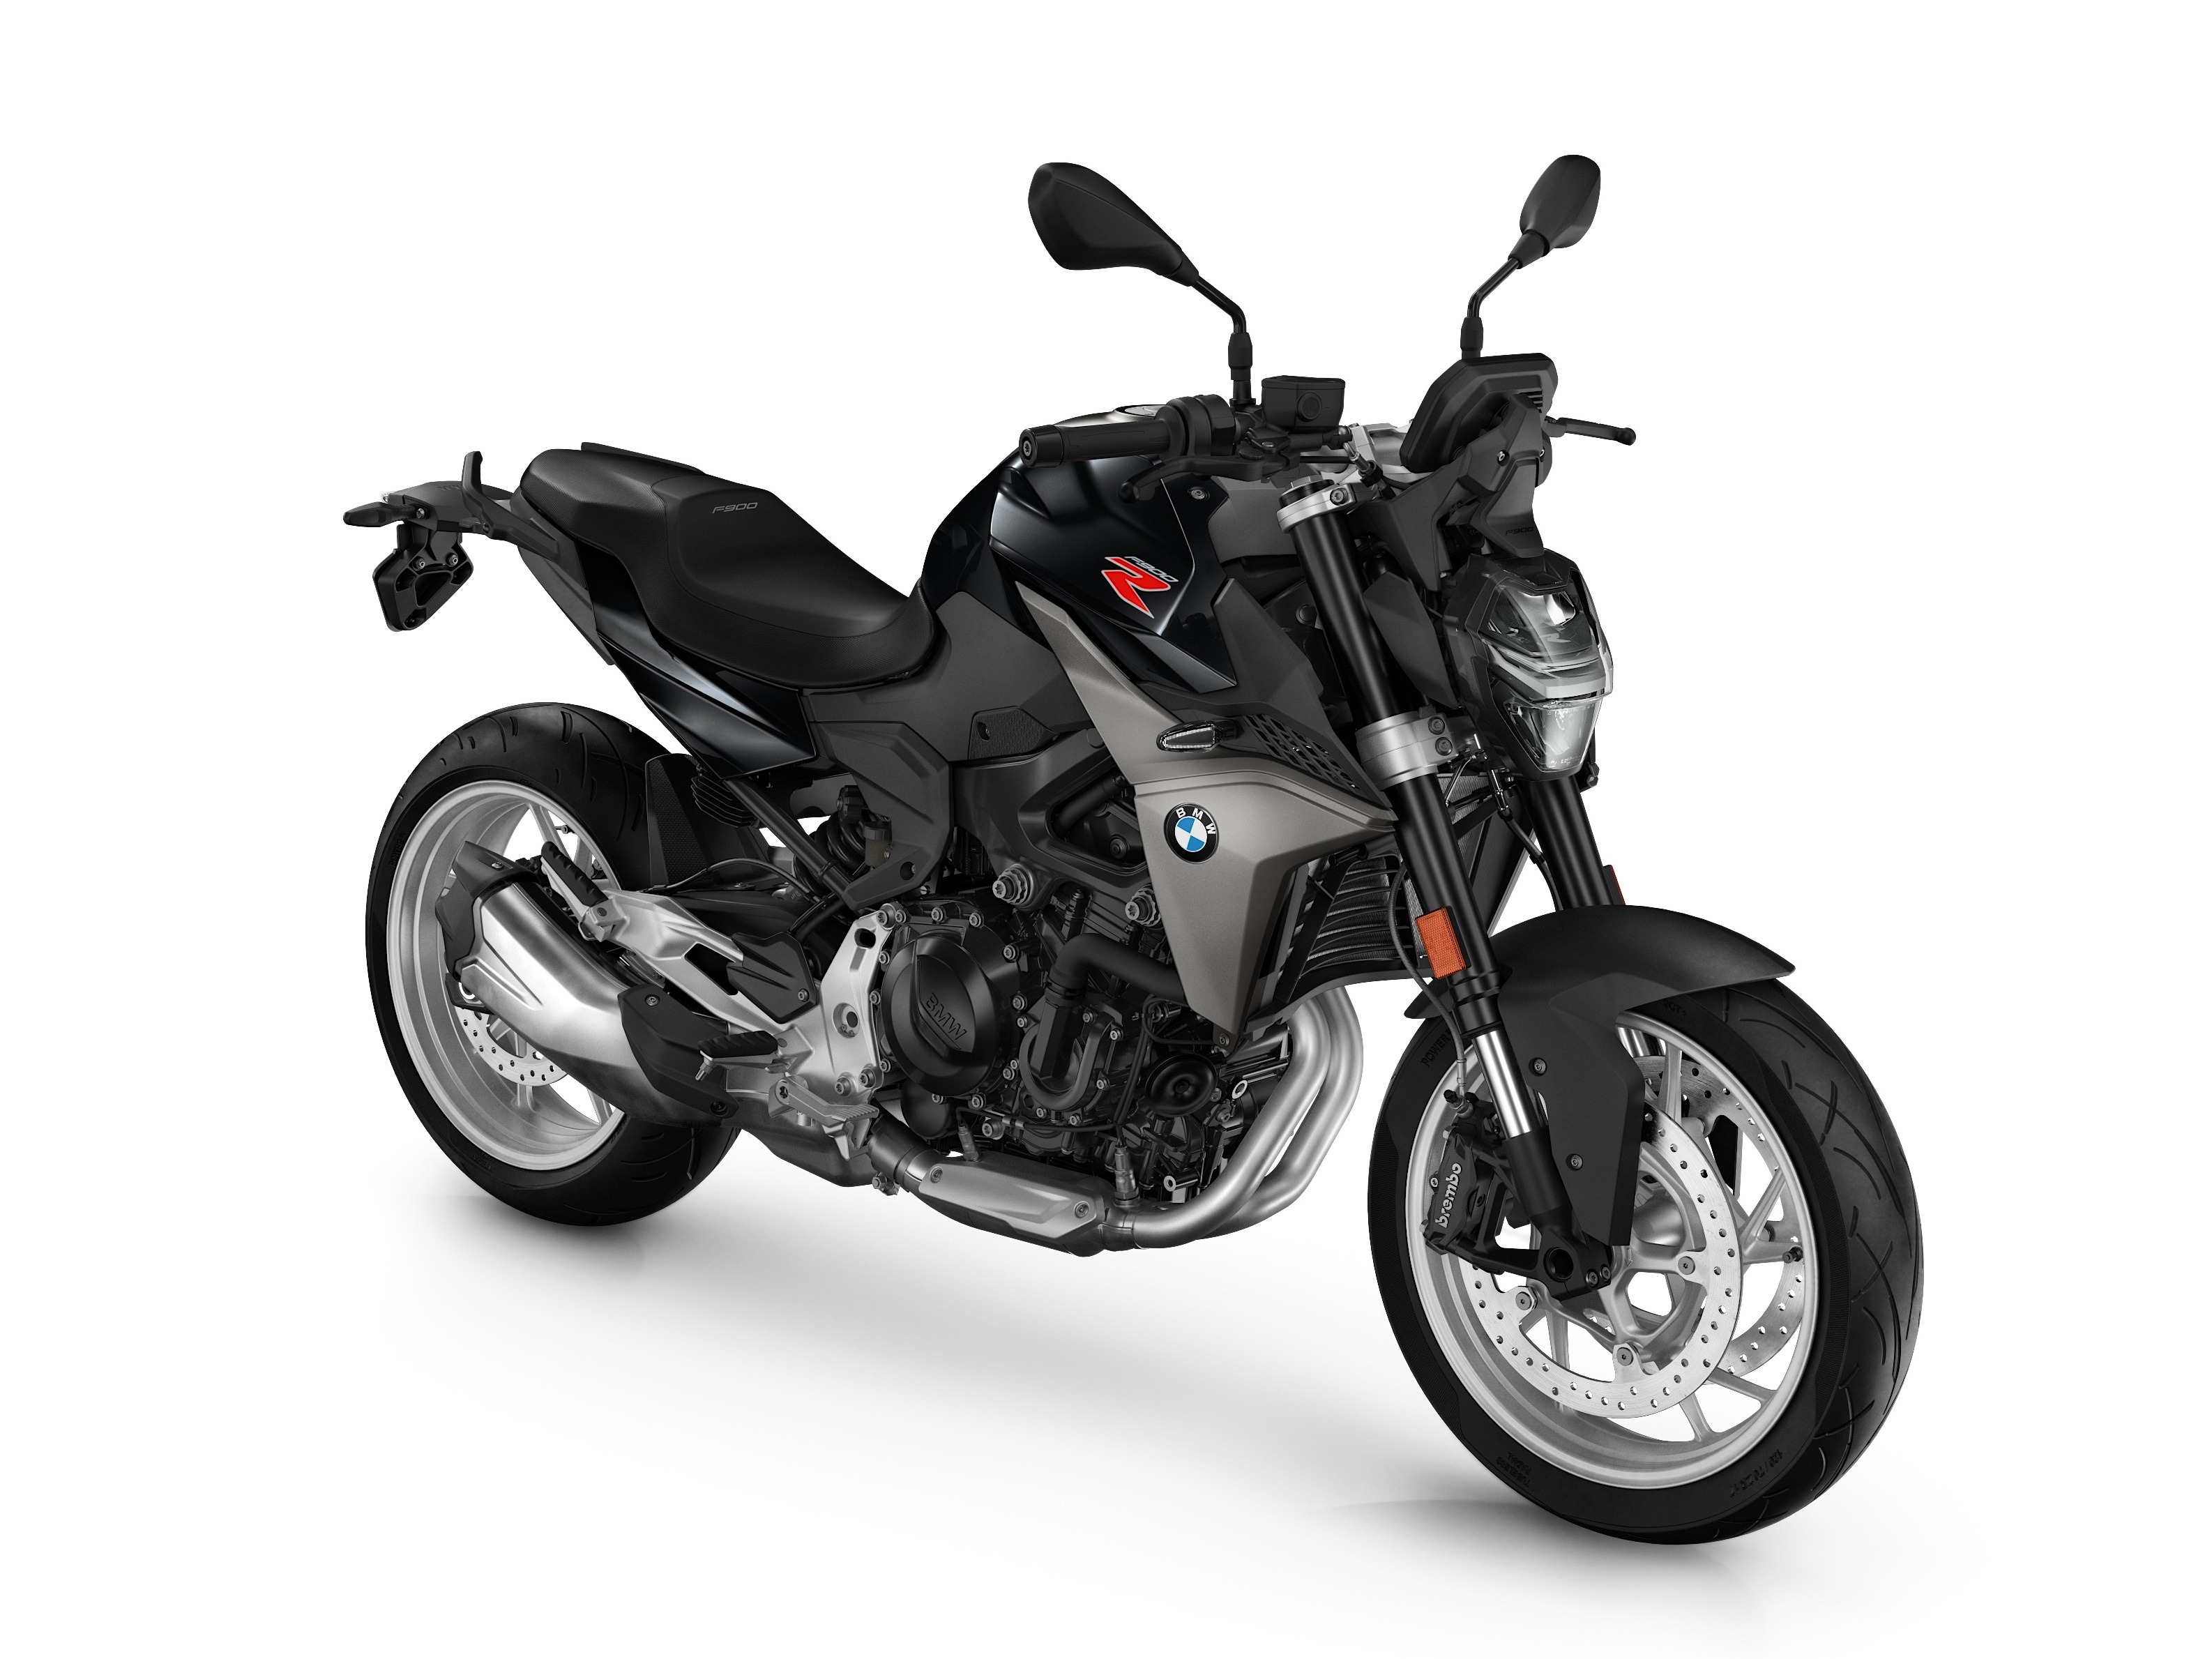 F 900R, primeira das sete novas motos prometidas pela BMW, chega ao Brasil  - 18/11/2022 - UOL Carros